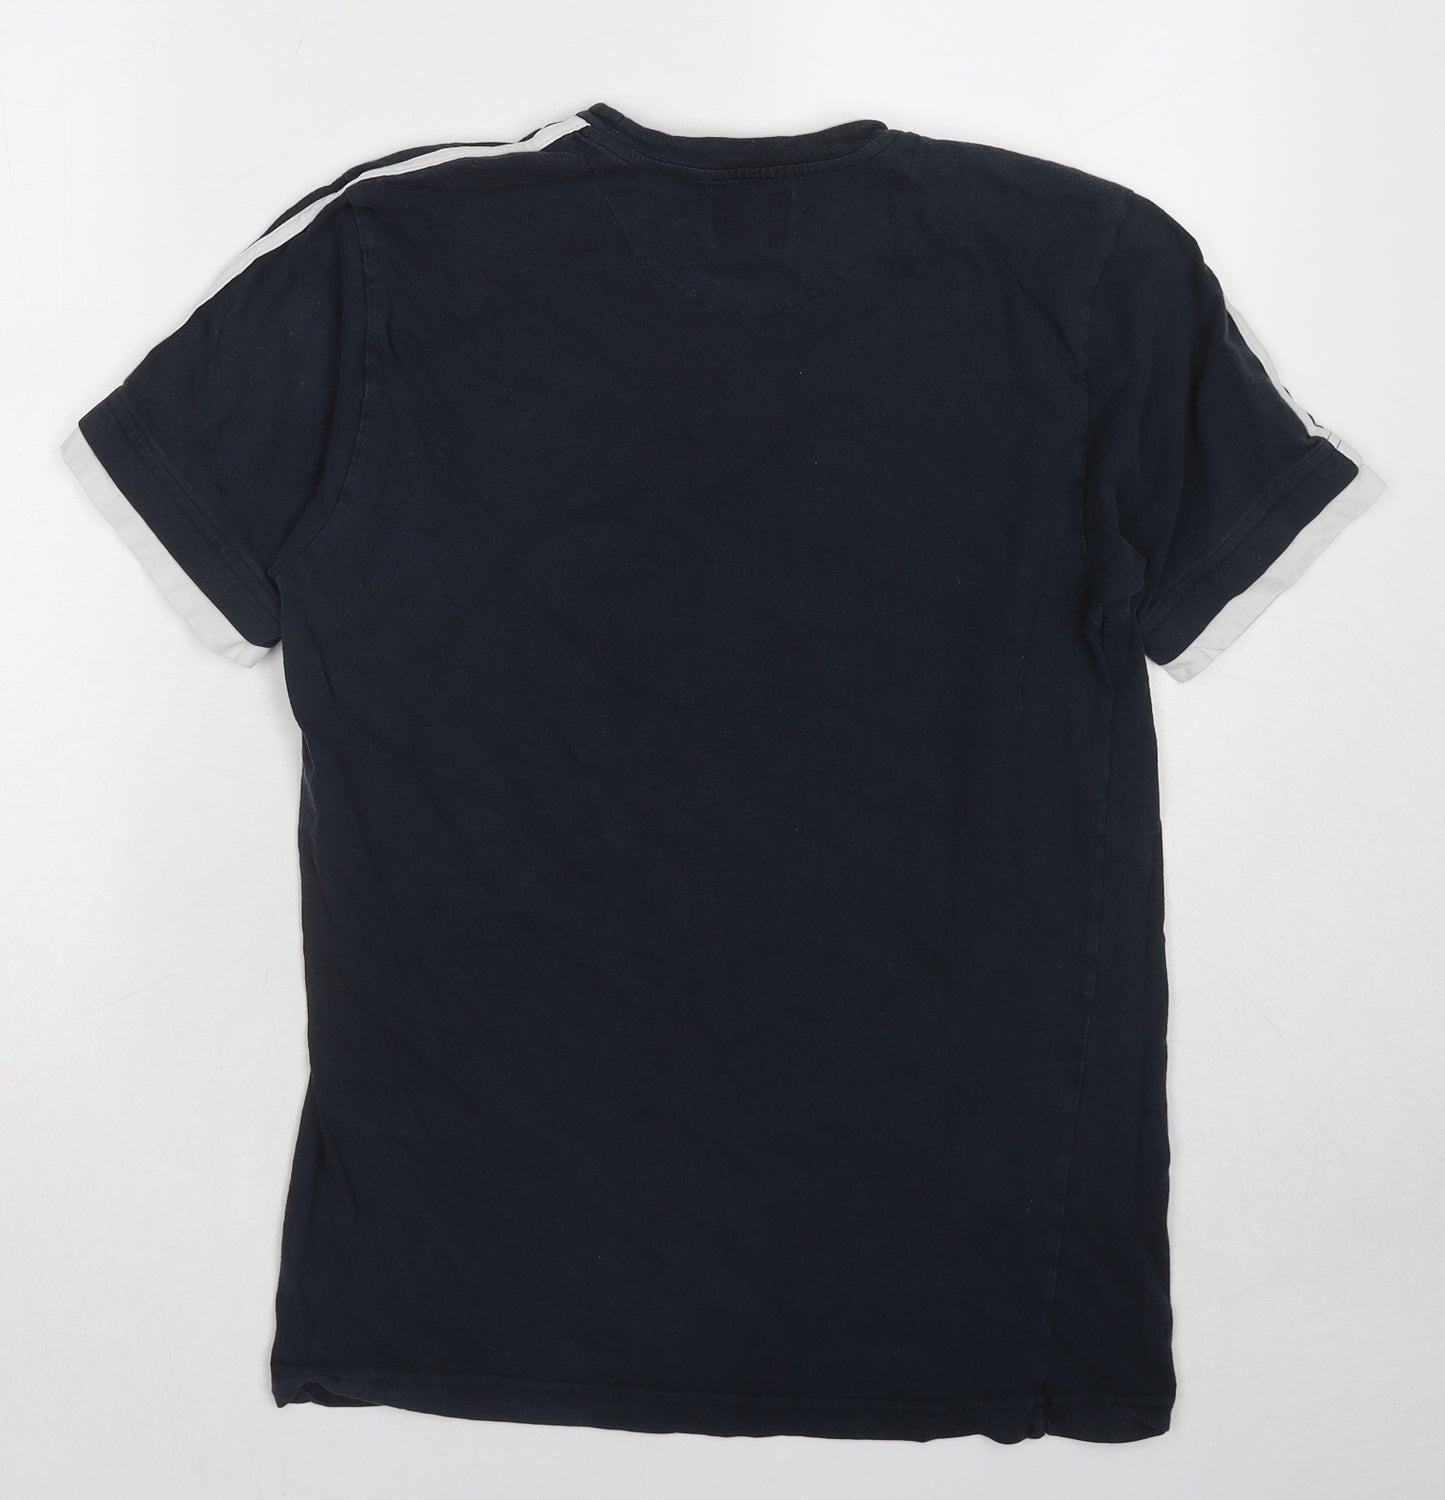 GymLocker Mens Black Cotton T-Shirt Size M Round Neck